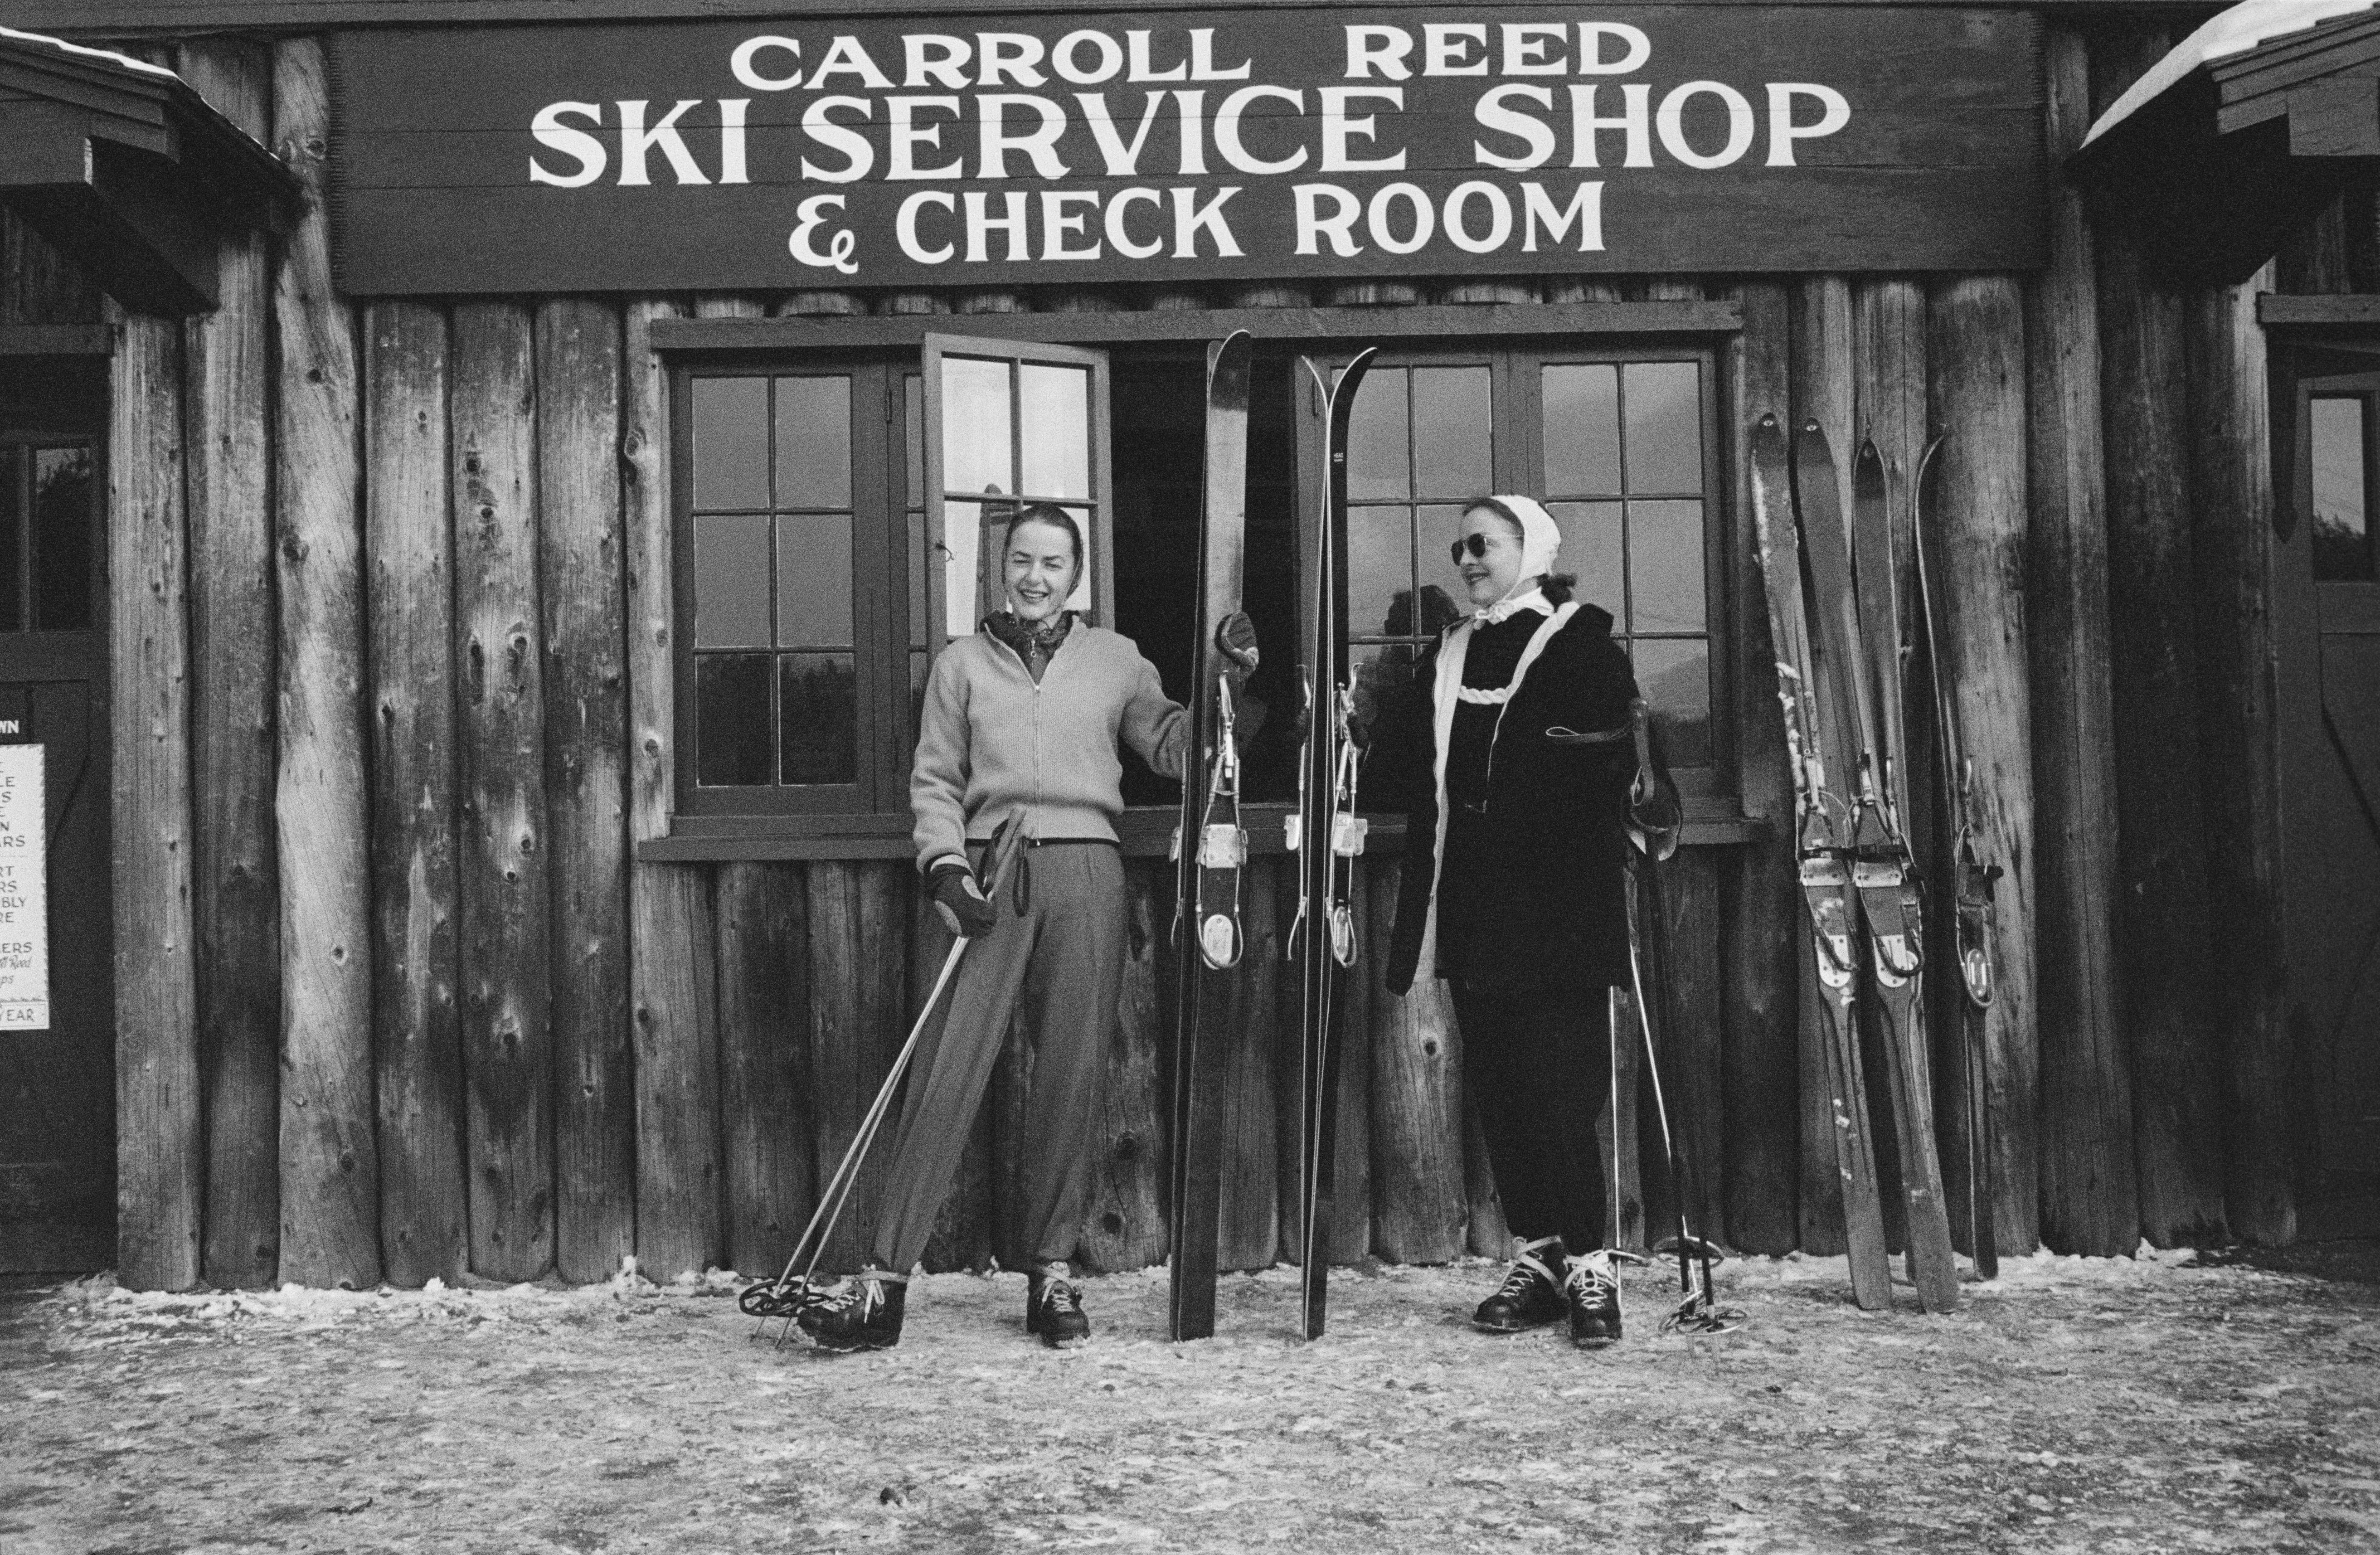 Palm Bay Club, Estate Edition Photograph: 1950s Ski in New Hampshire